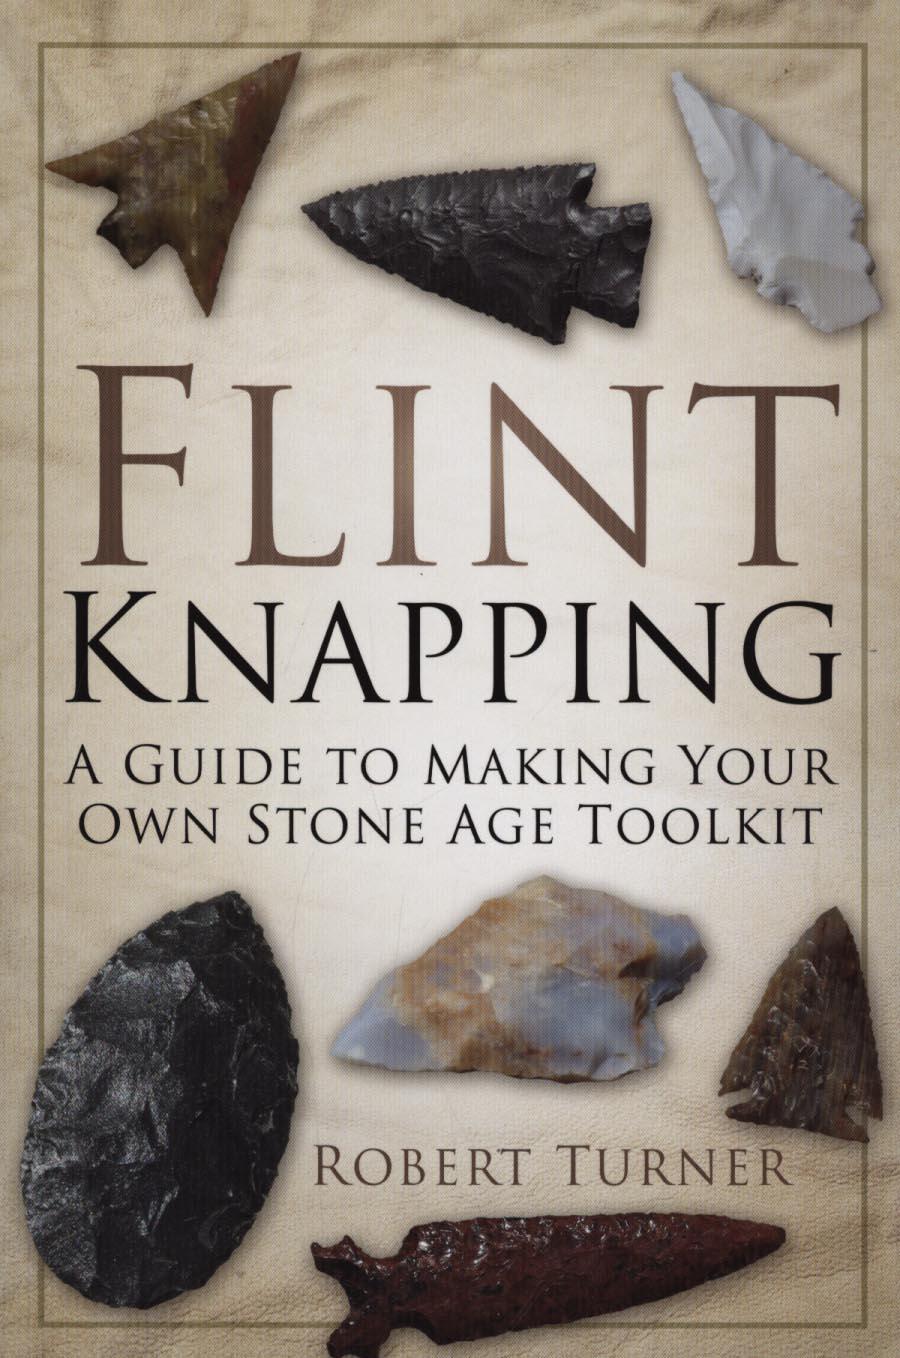 Flint Knapping